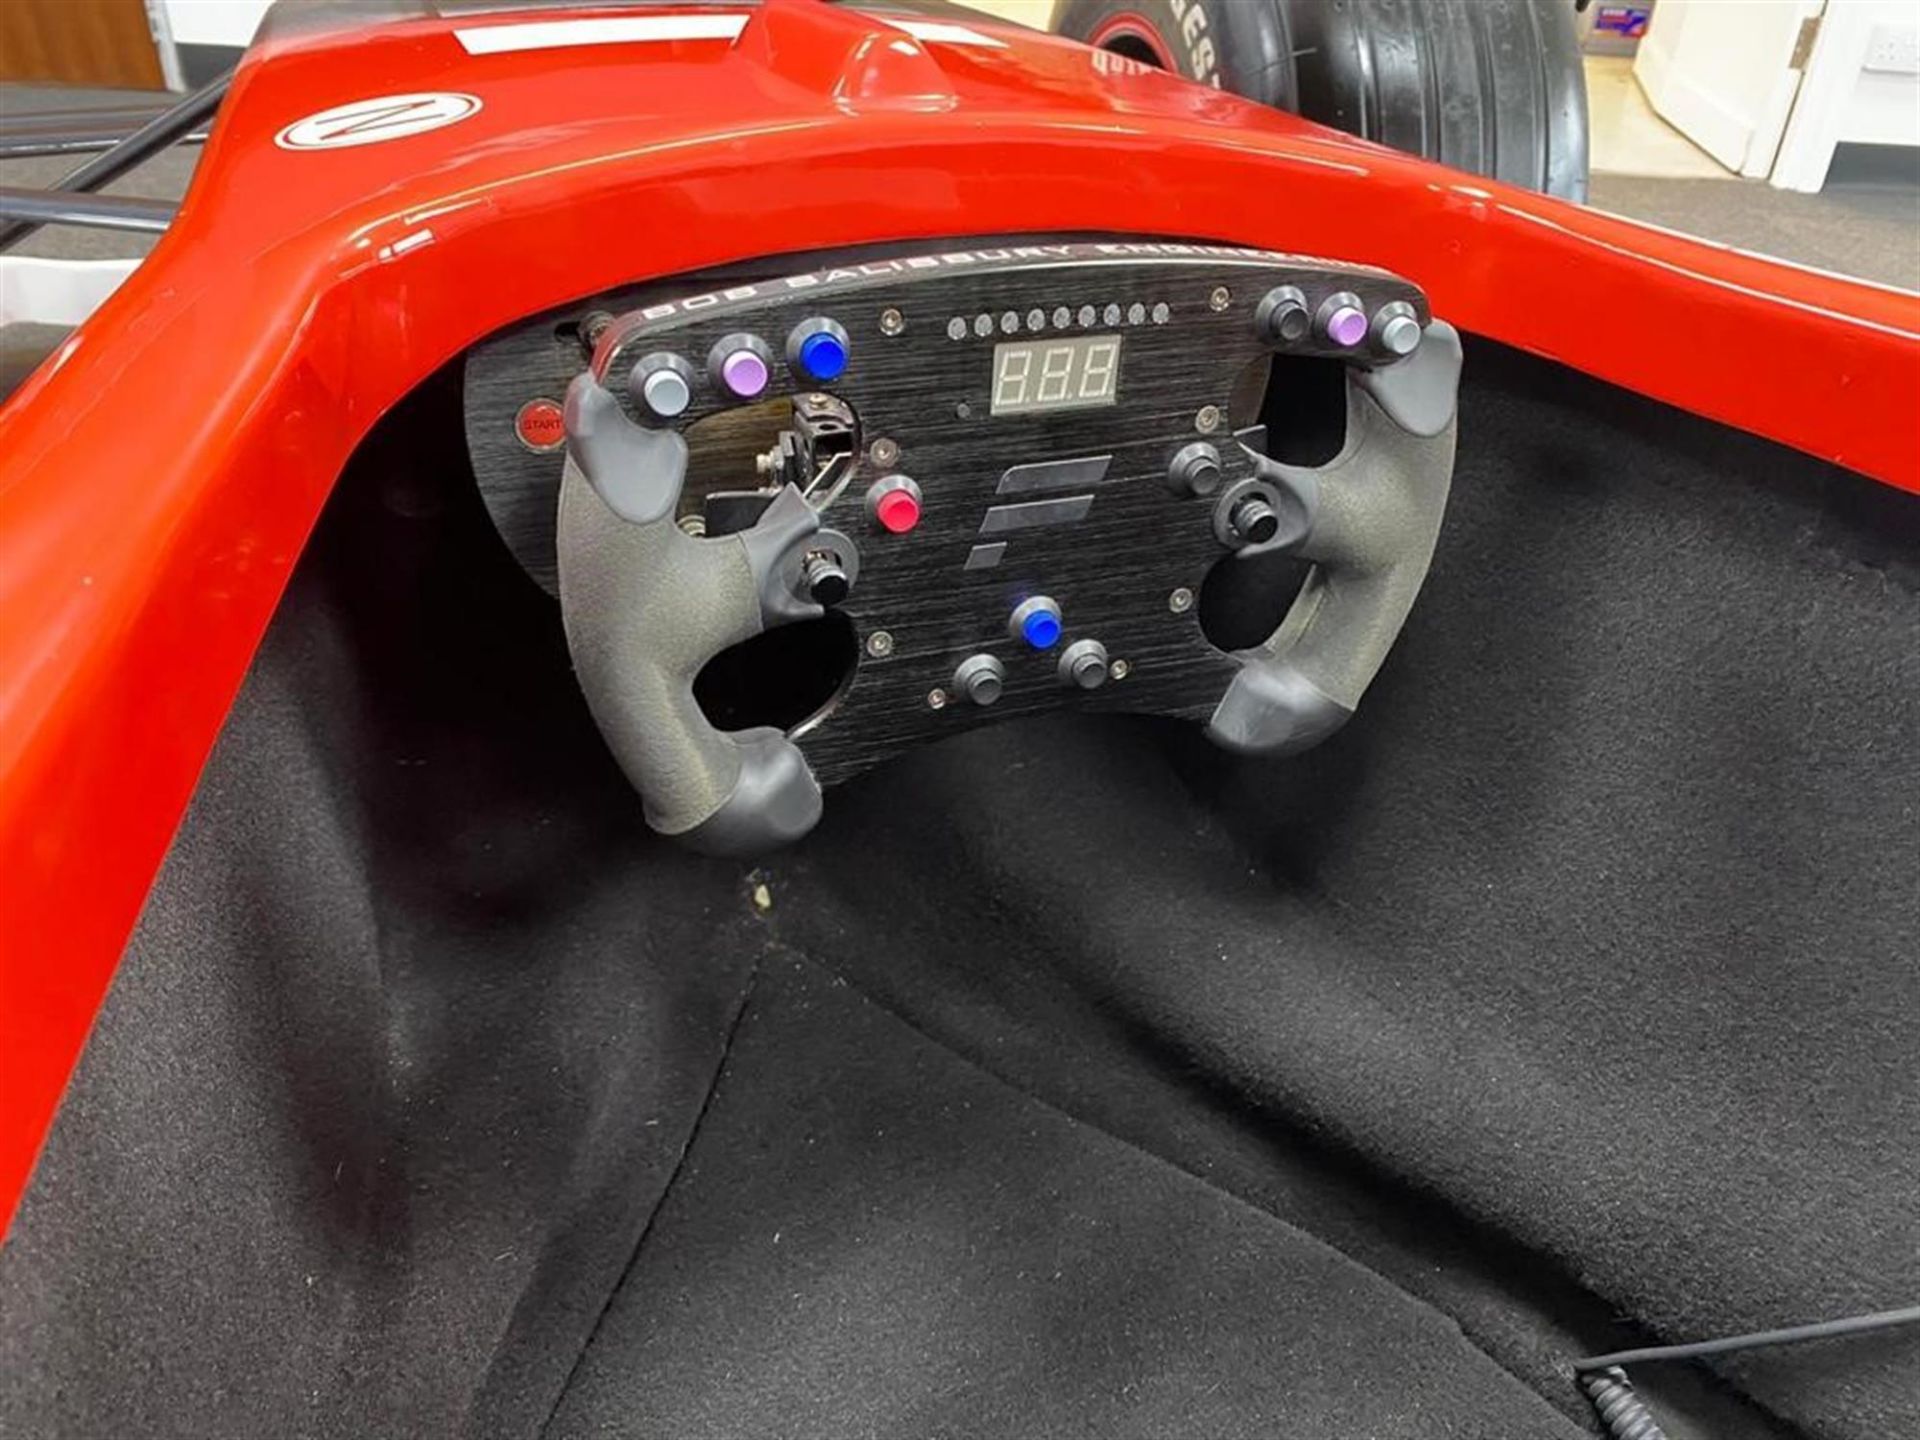 Ferrari F1 Official 2006 F1 Simulator. Original factory equipment - Image 3 of 4